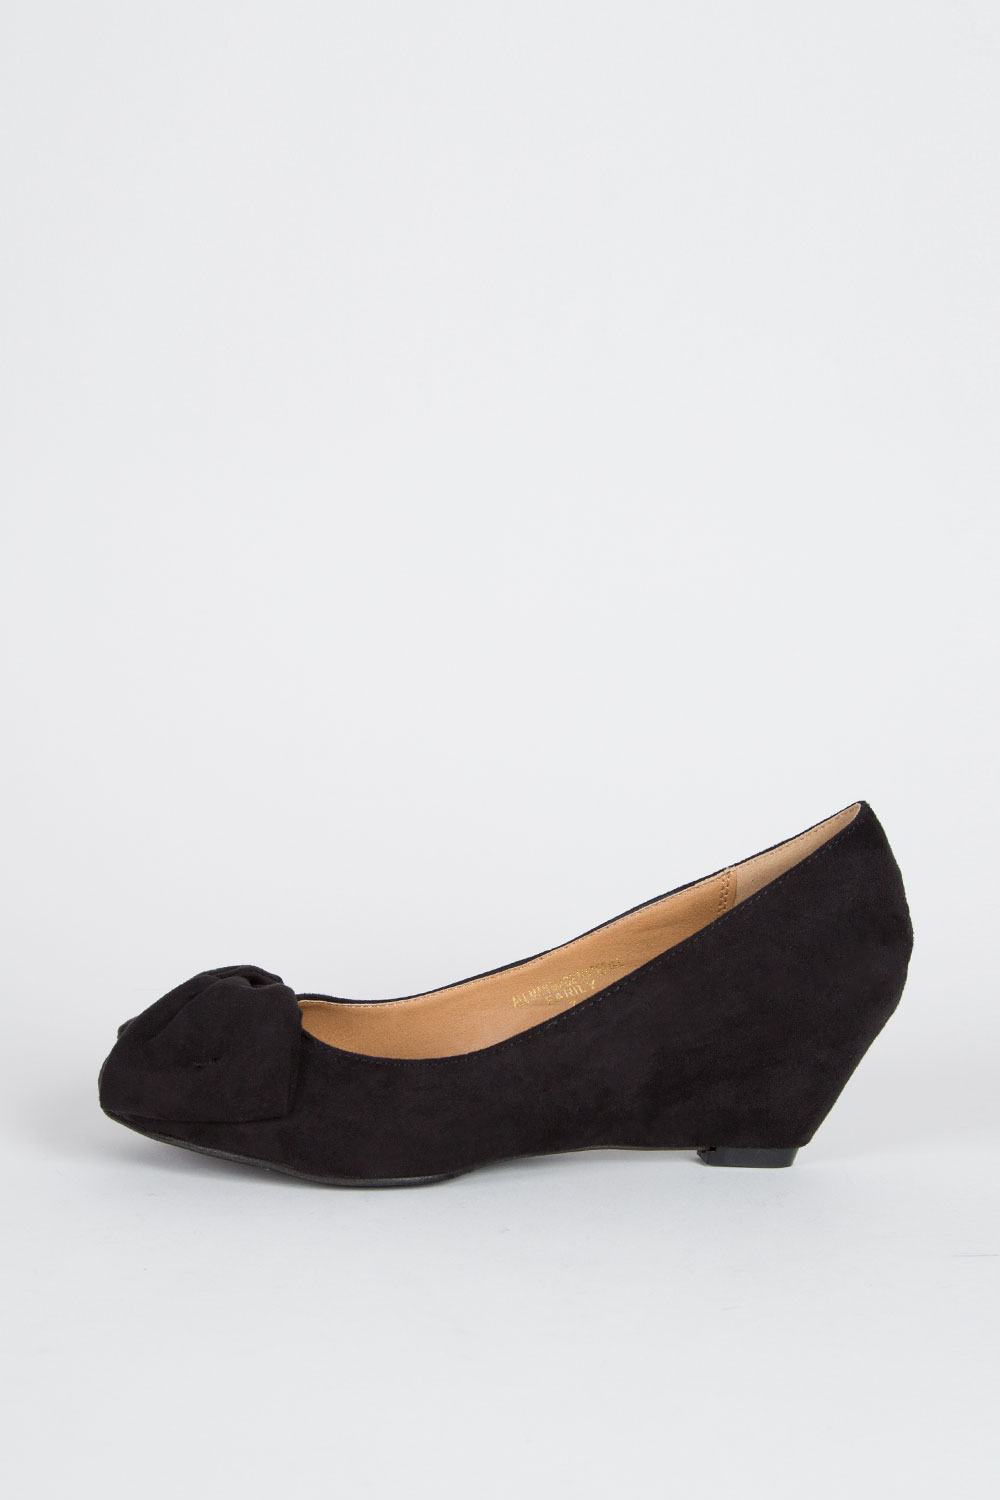 ELLIMAX.COM :: PRODUCTS :: Shoes :: Sandals :: & Wedge :: Medium Low Hidden Heel Bow Tie Ballet Ballerina Shoes